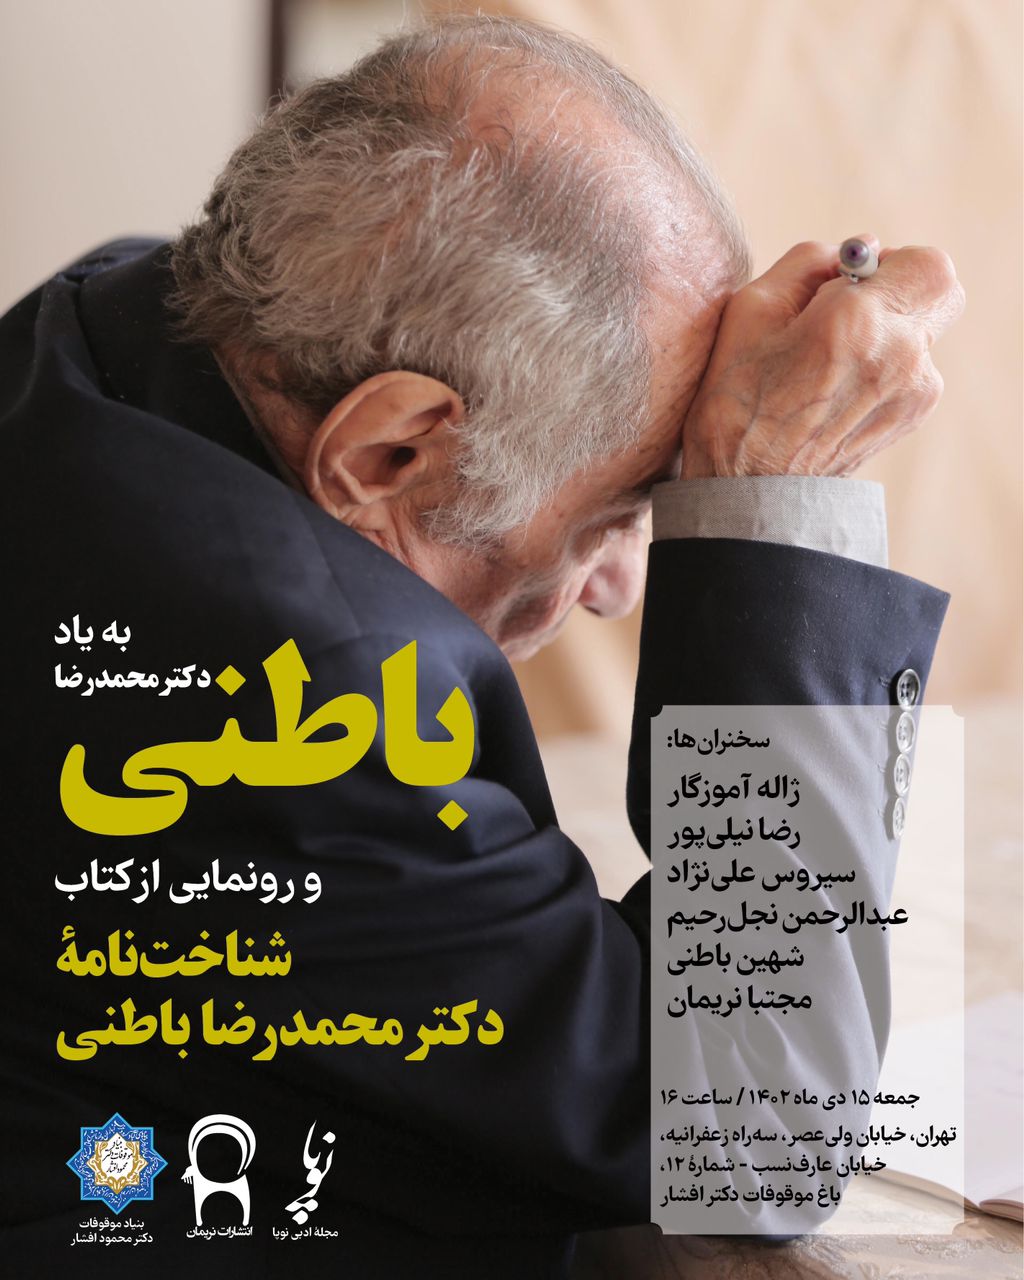 به یاد دکتر محمدرضا باطنی با همکاری مجلهٔ ادبی نوپا